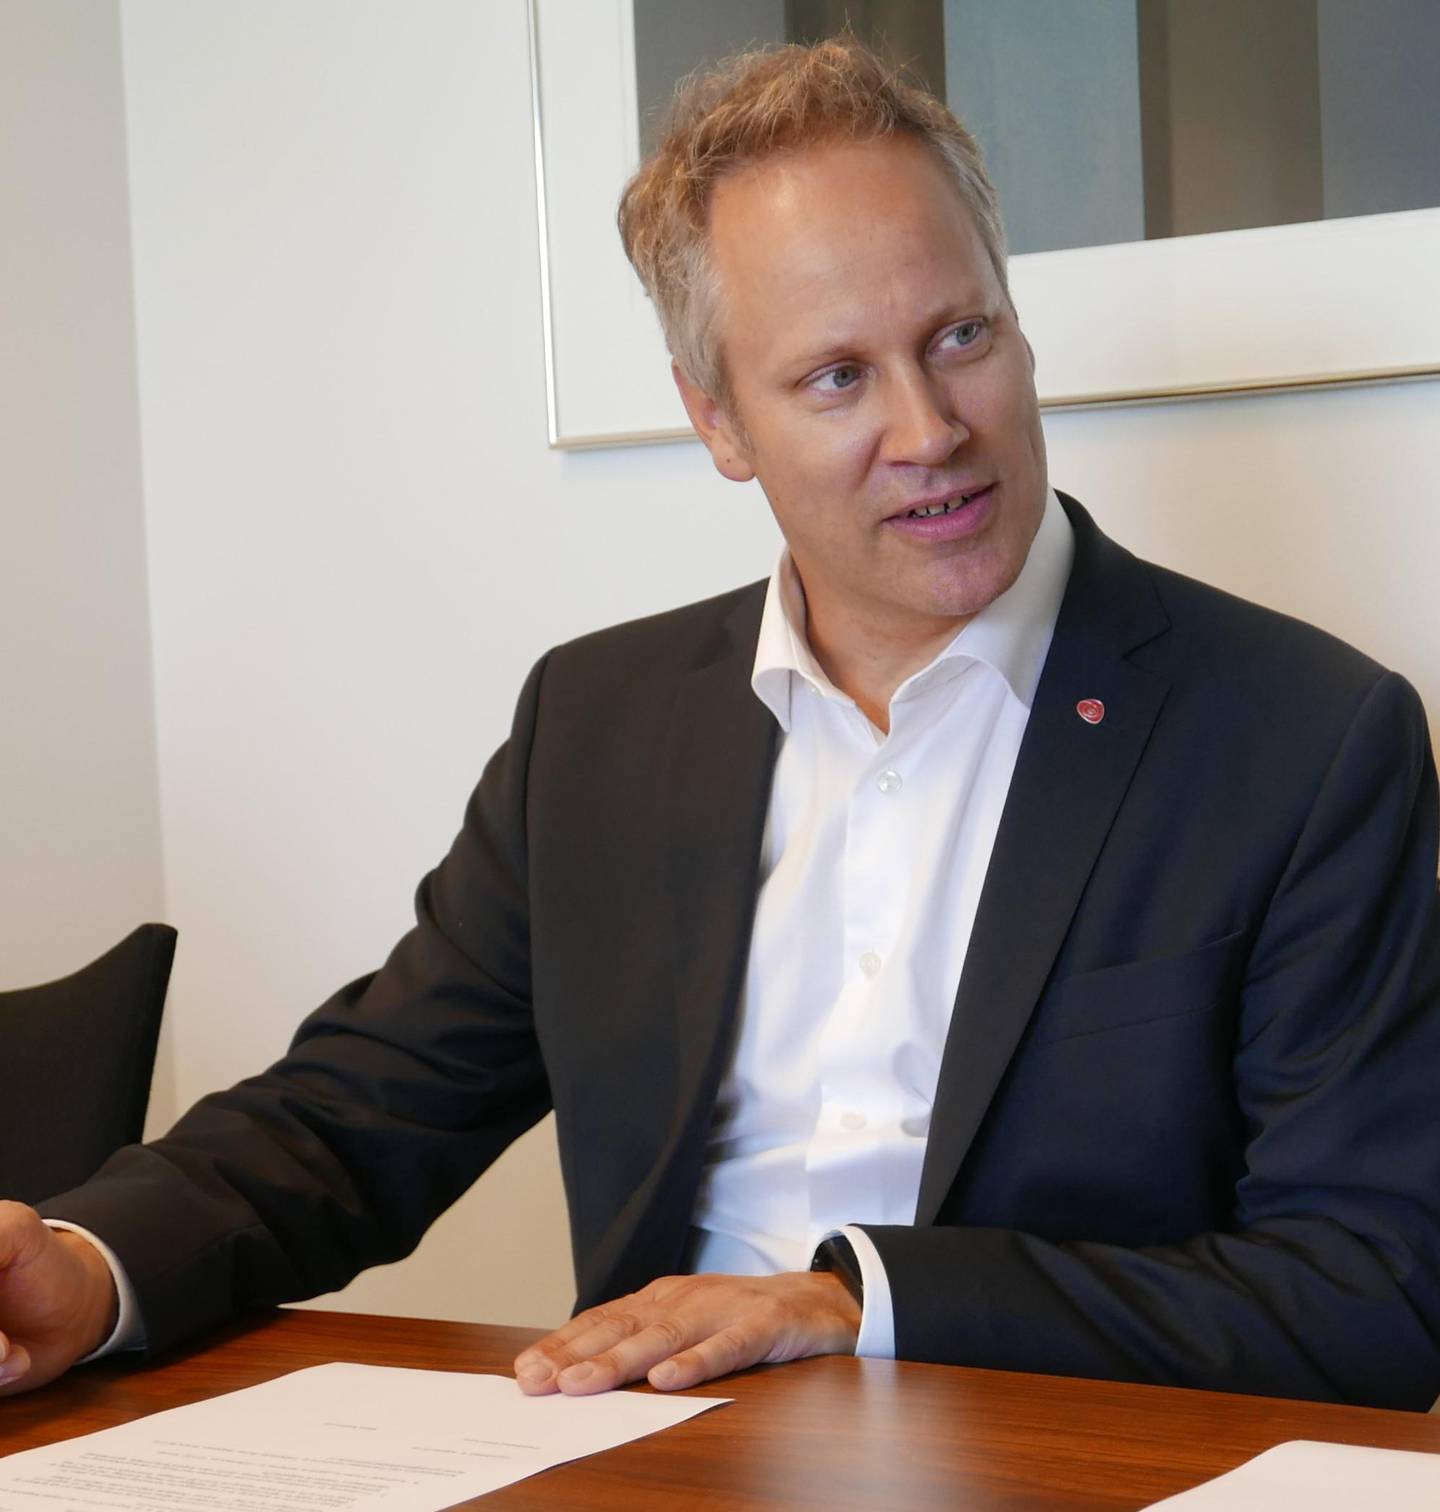 Jon-Ivar Nygård og Hanne Tollerud, ordførere i henholdsvis Fredrikstad og Moss, signerer avtale om utleie av en av Fredrikstads byferger til testing i Moss. På Nygårds kontor. Begge Ap.